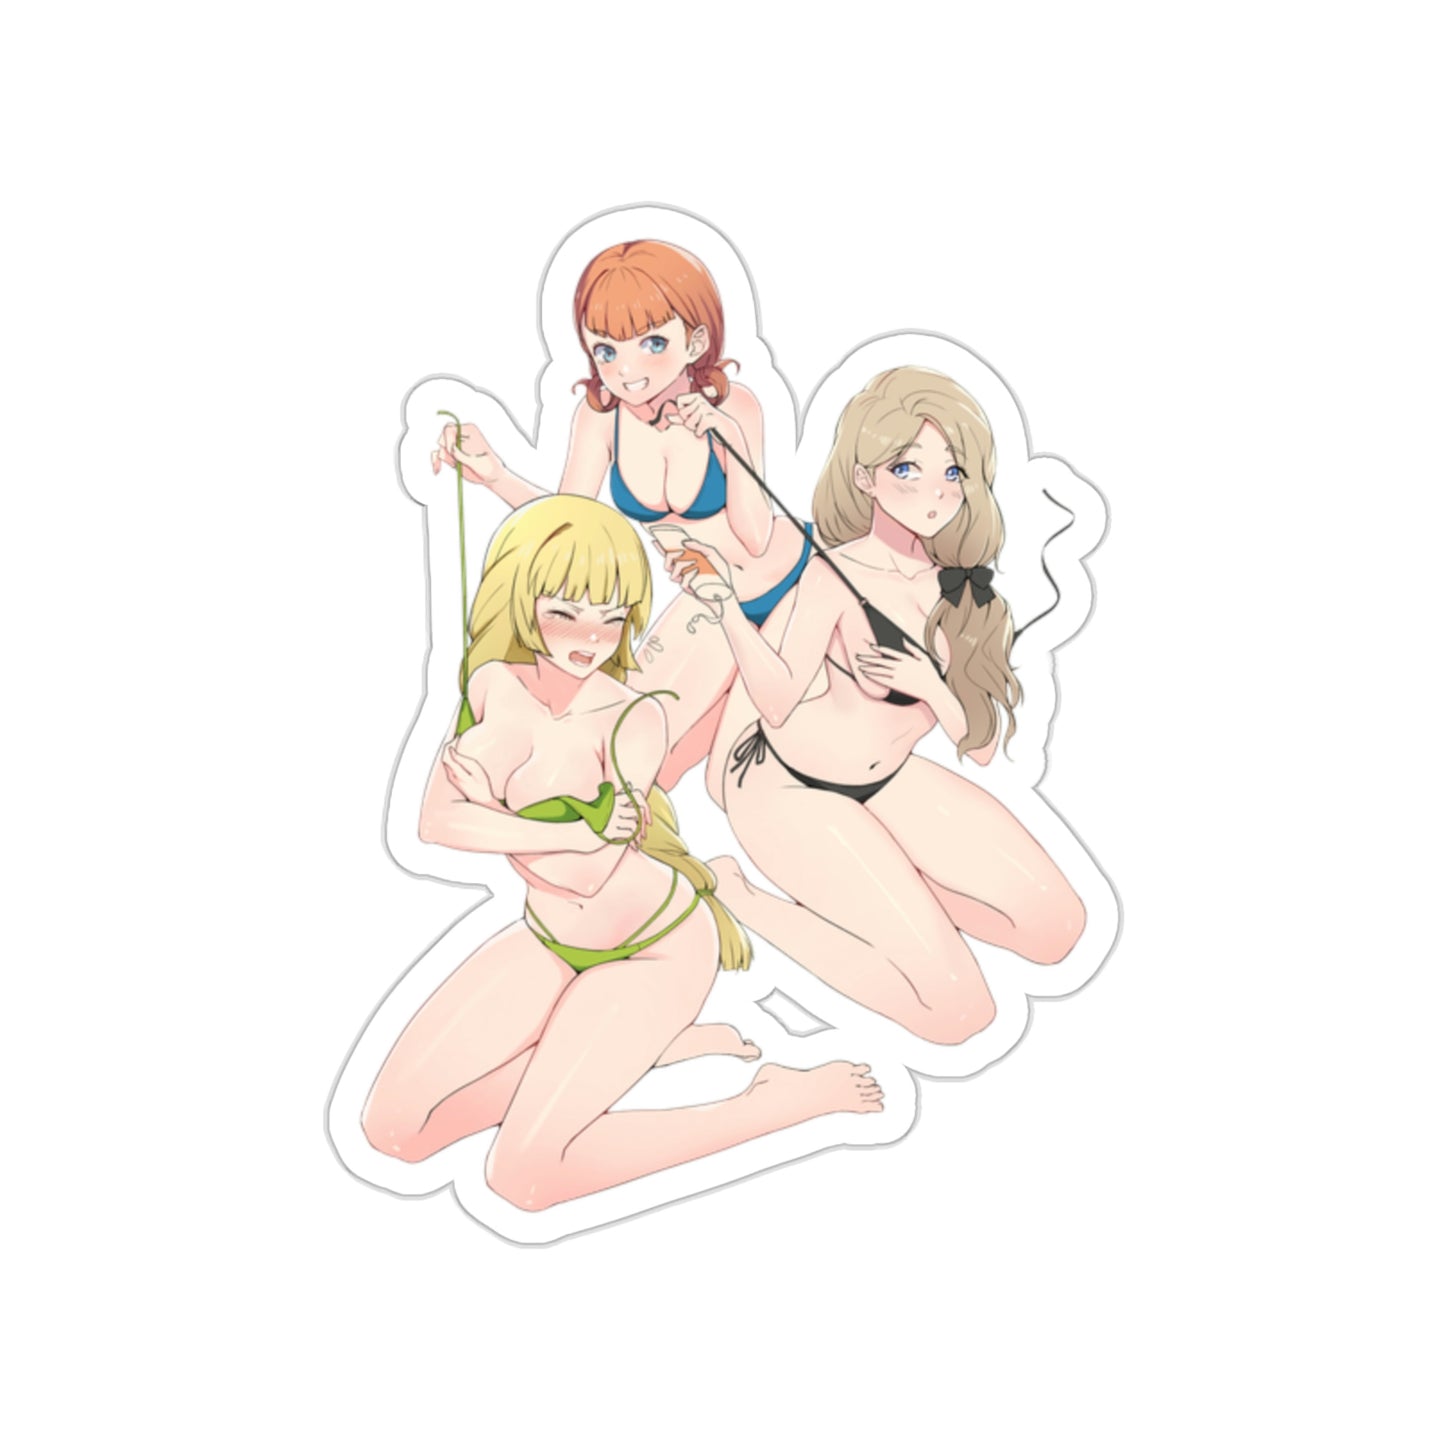 Fire Emblem Bikini Pull Waterproof Sticker - Ecchi Vinyl Decal